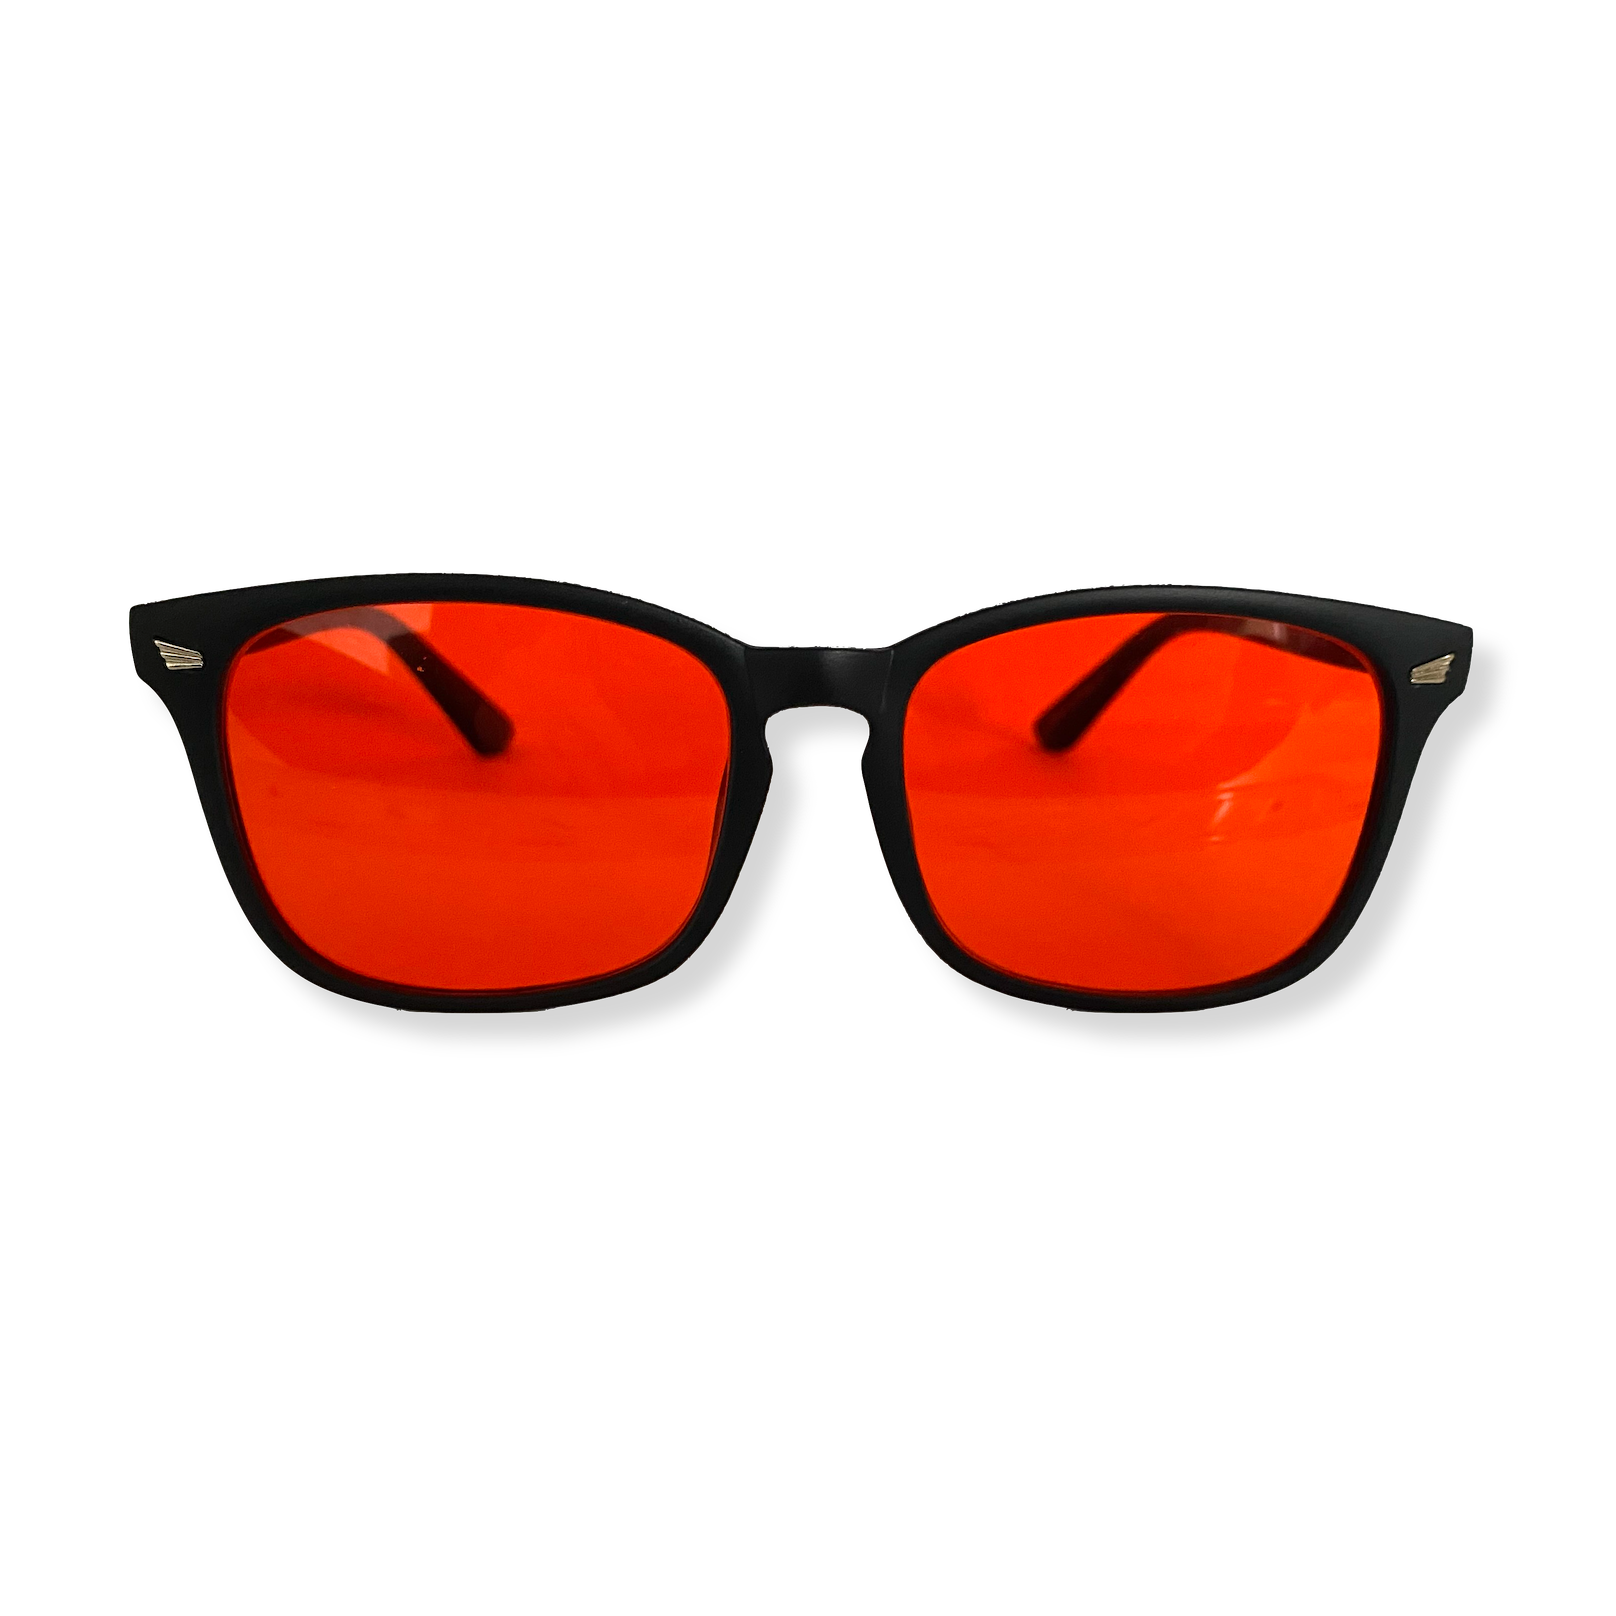 Gafas de sol: la oscuridad de la lente no significa mayor protección